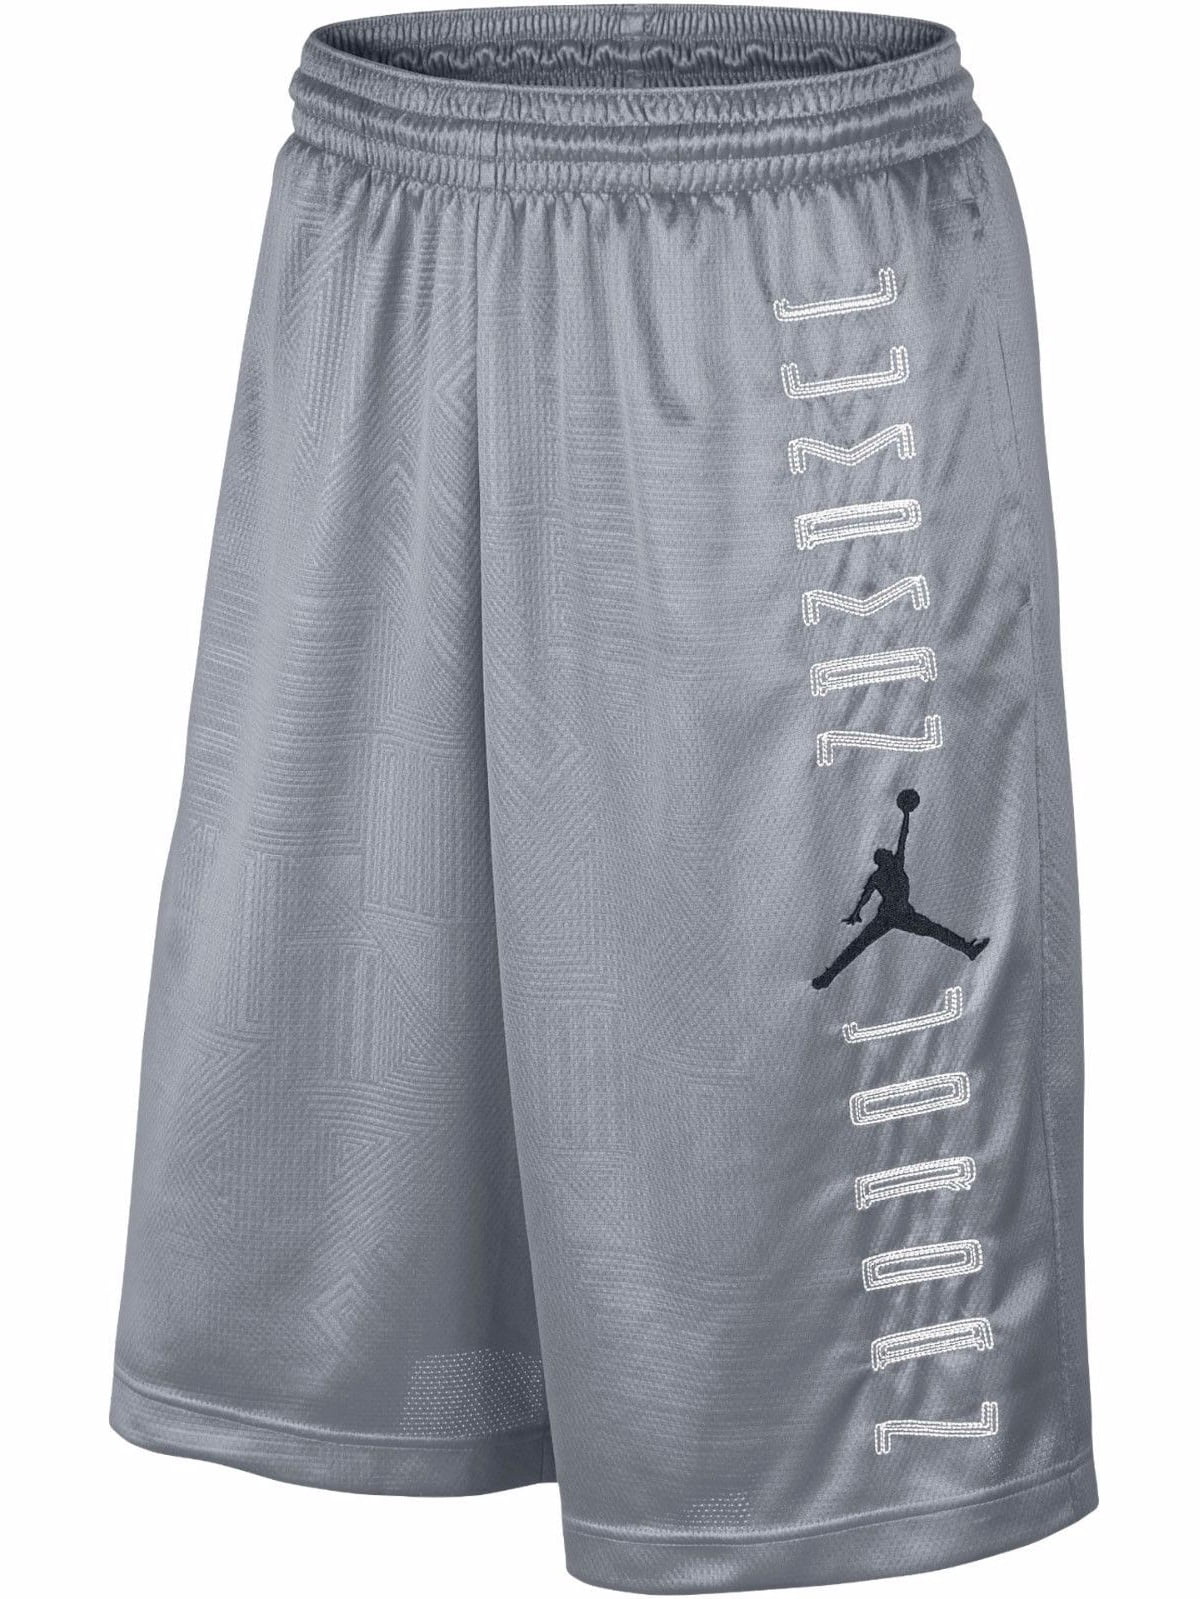 Nike Jordan Retro 11 Jumpman Baskeball Shorts - Walmart.com